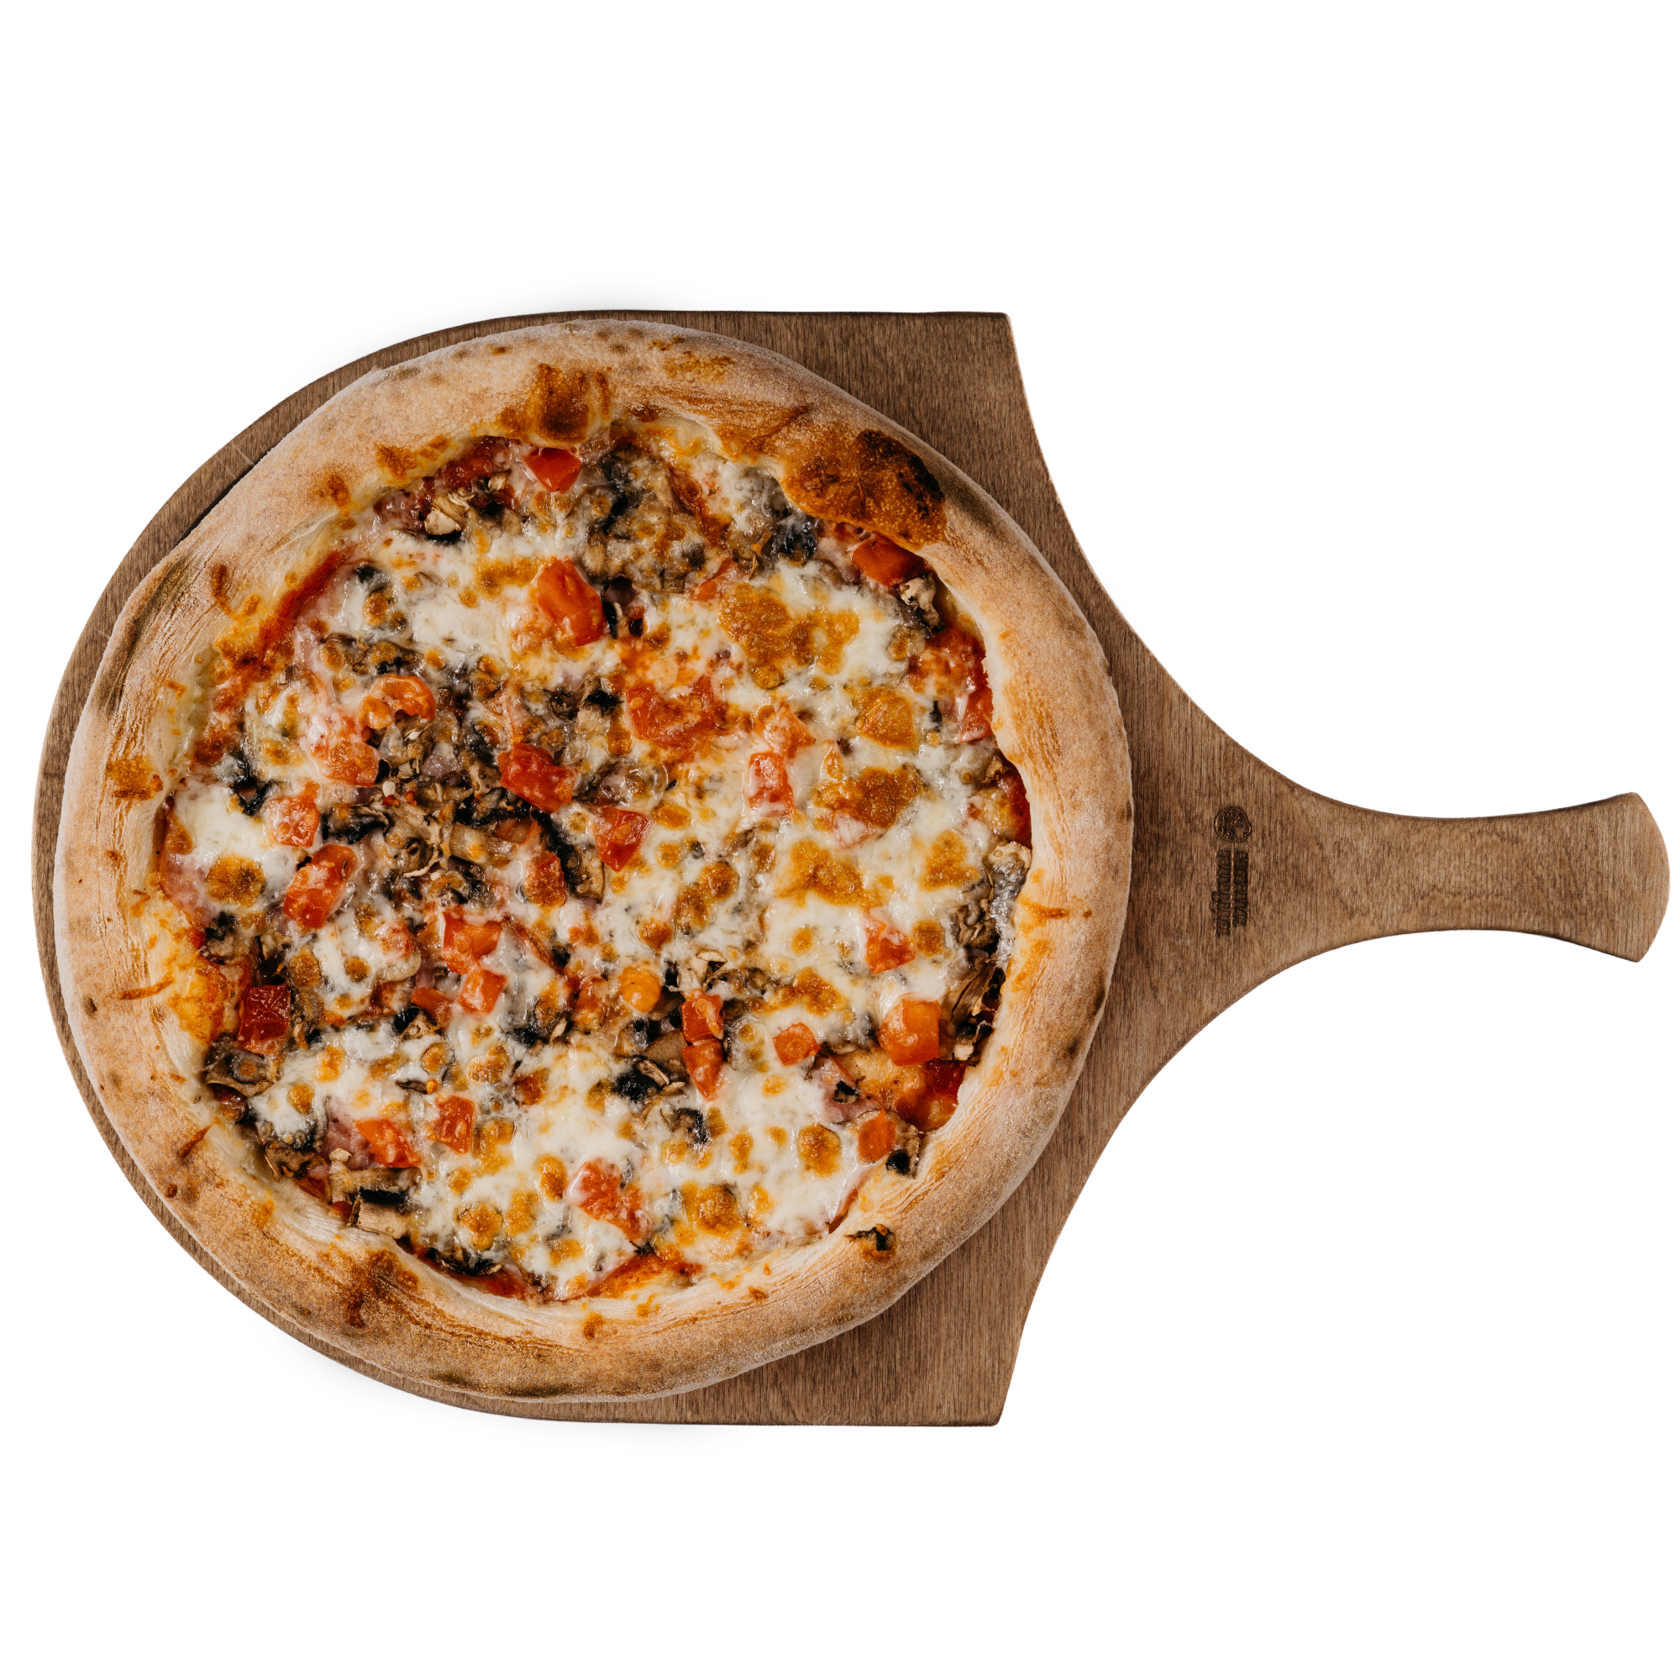 цезарь пицца с ветчиной и грибами 420 г фото 85